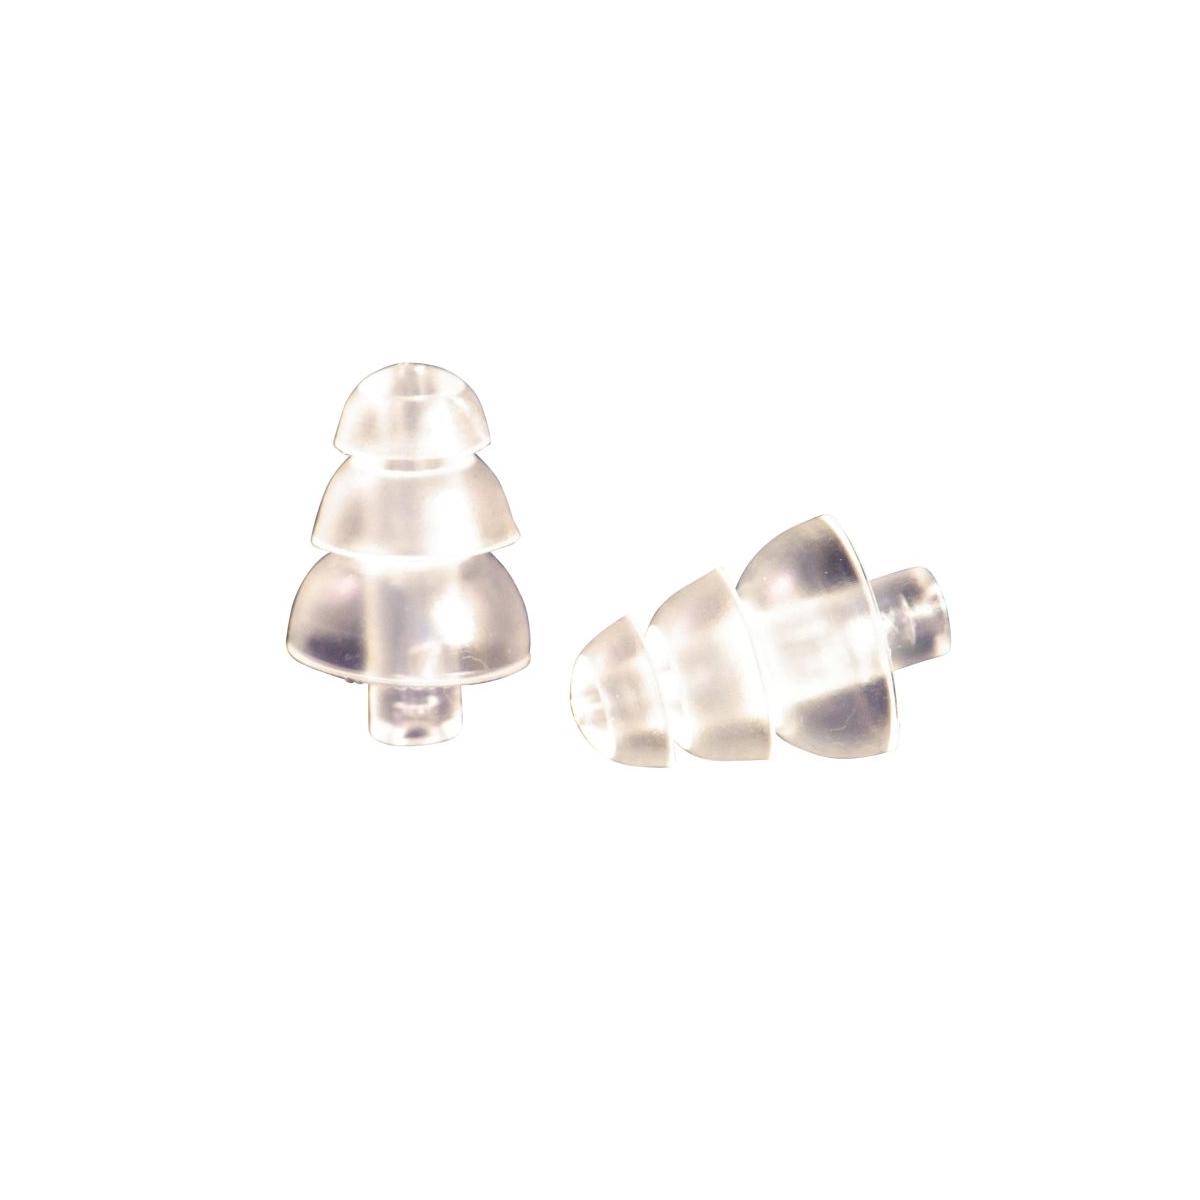 1 Paar MehrWeg 3M ClearE-A-R 20  Universal Gehörschutz Ohr Stöpsel 